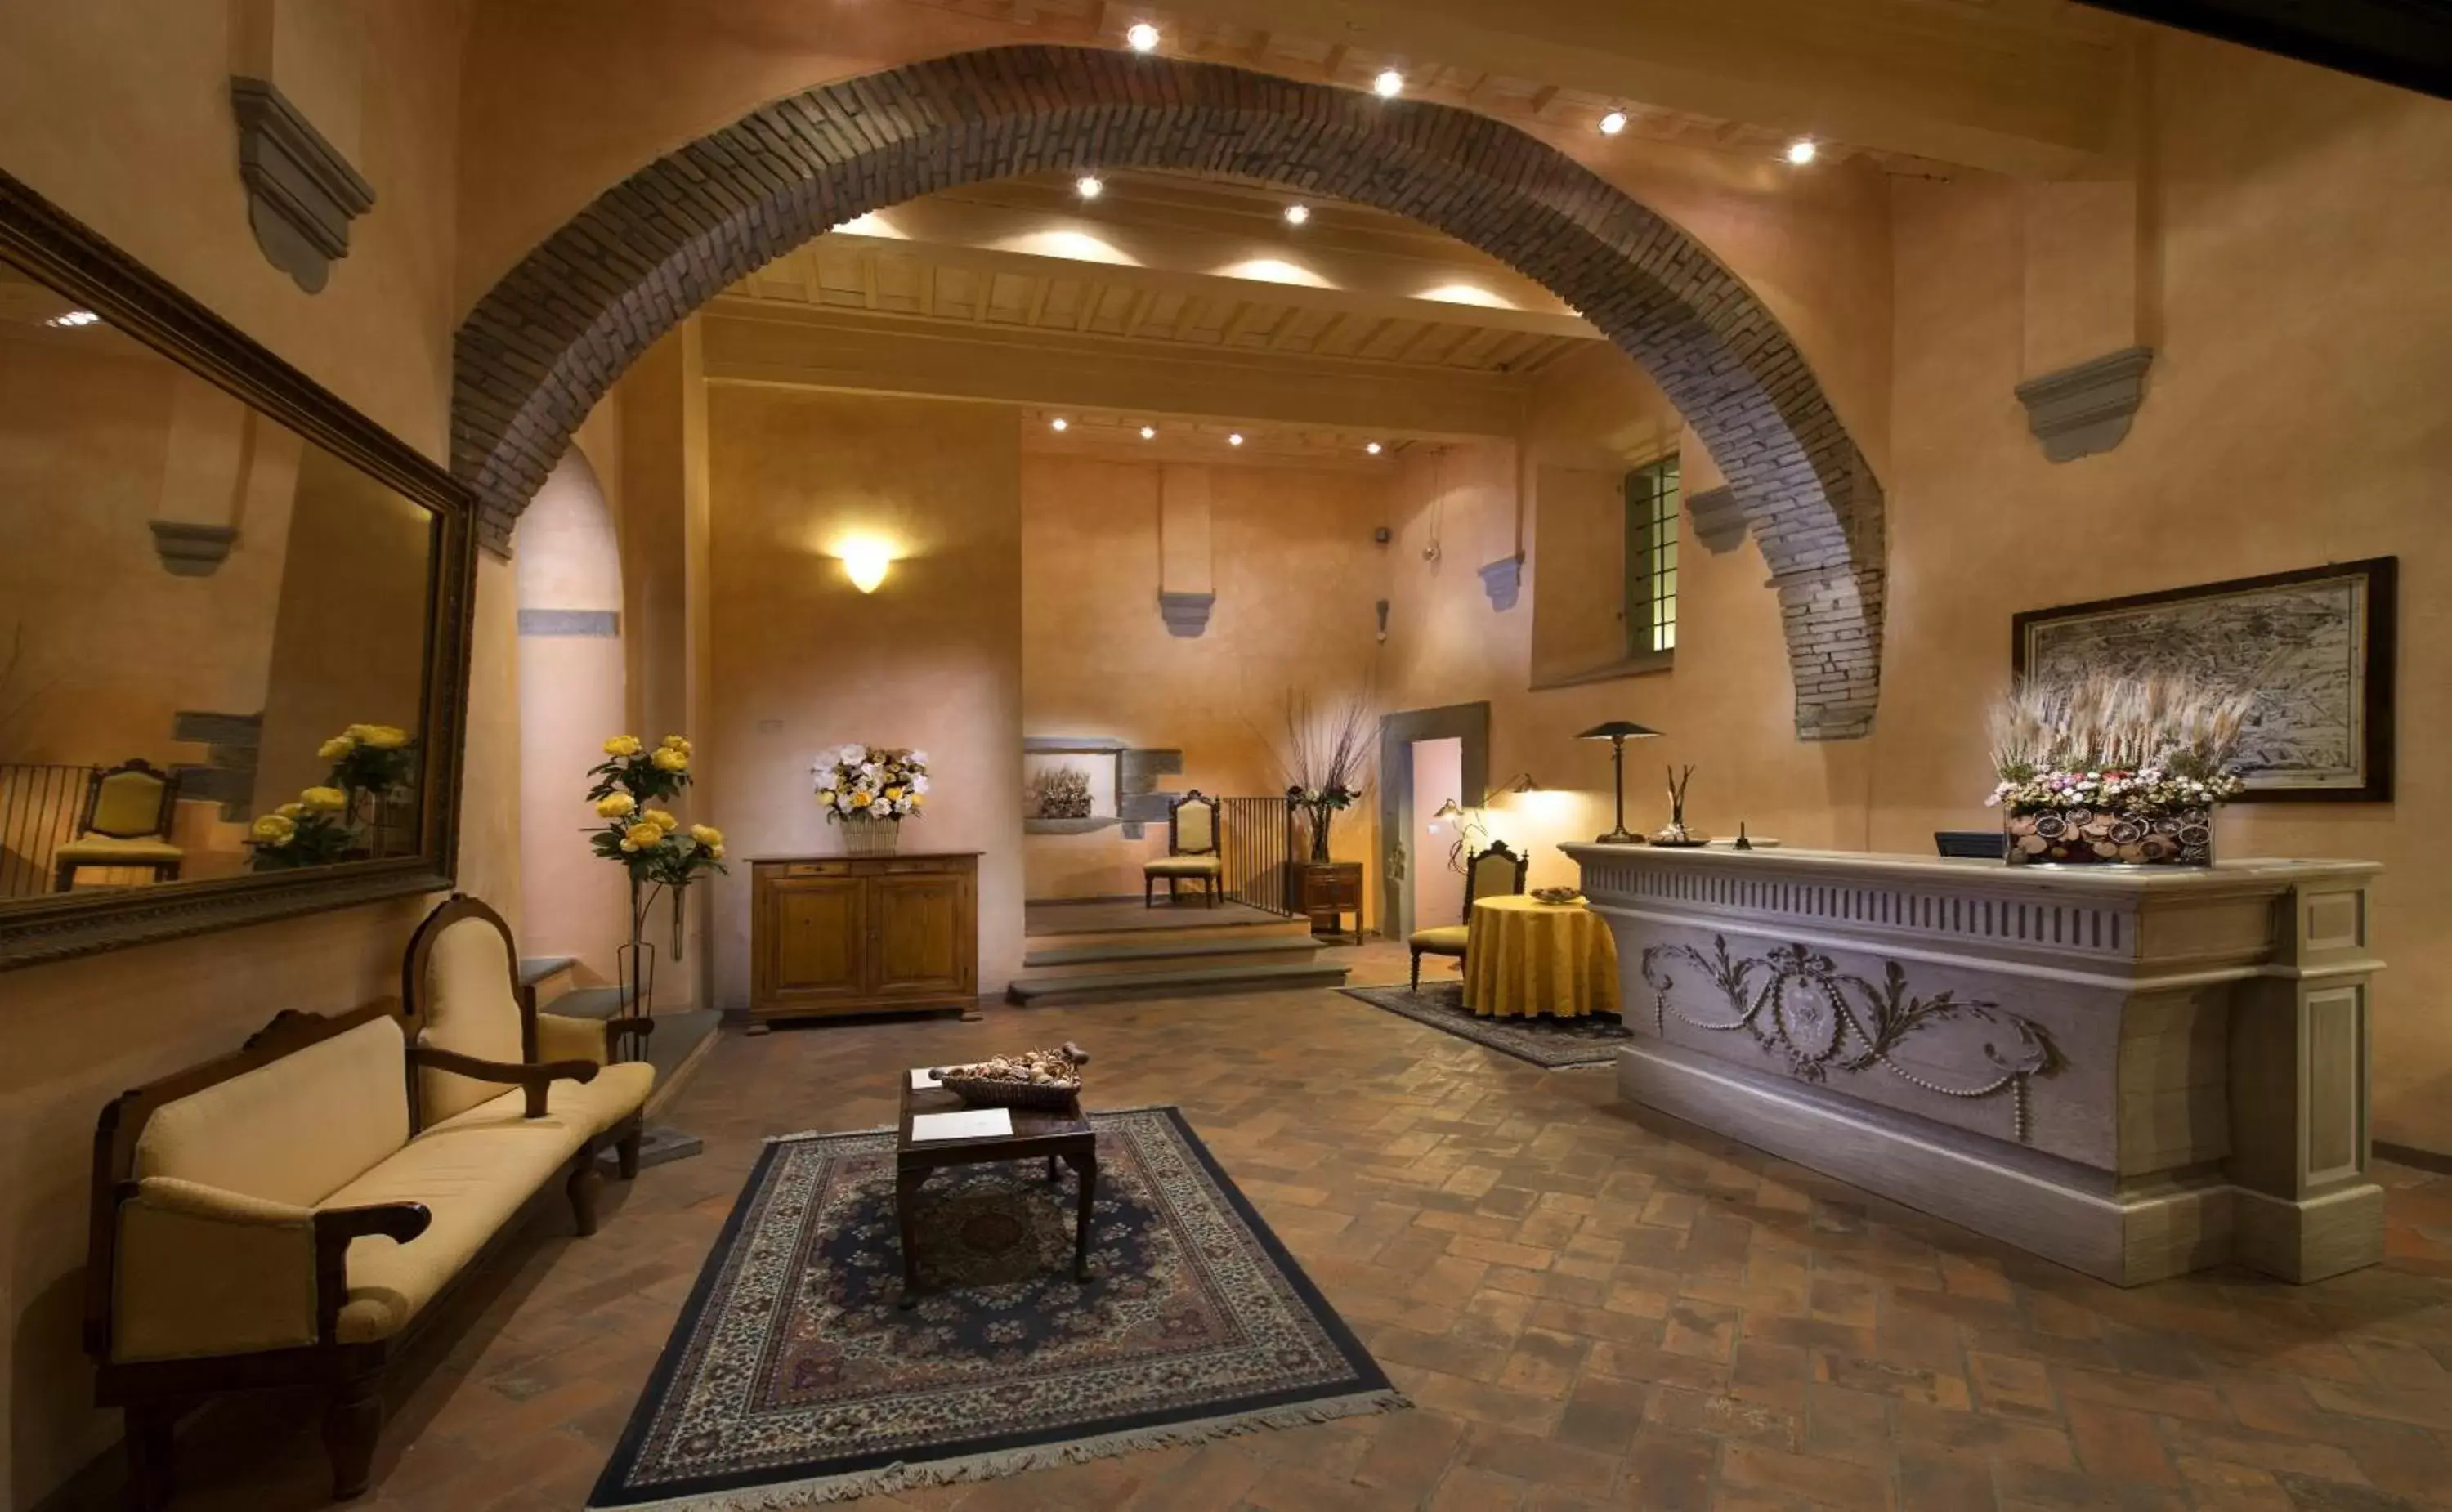 Lobby or reception, Lobby/Reception in Hotel Italia Cortona